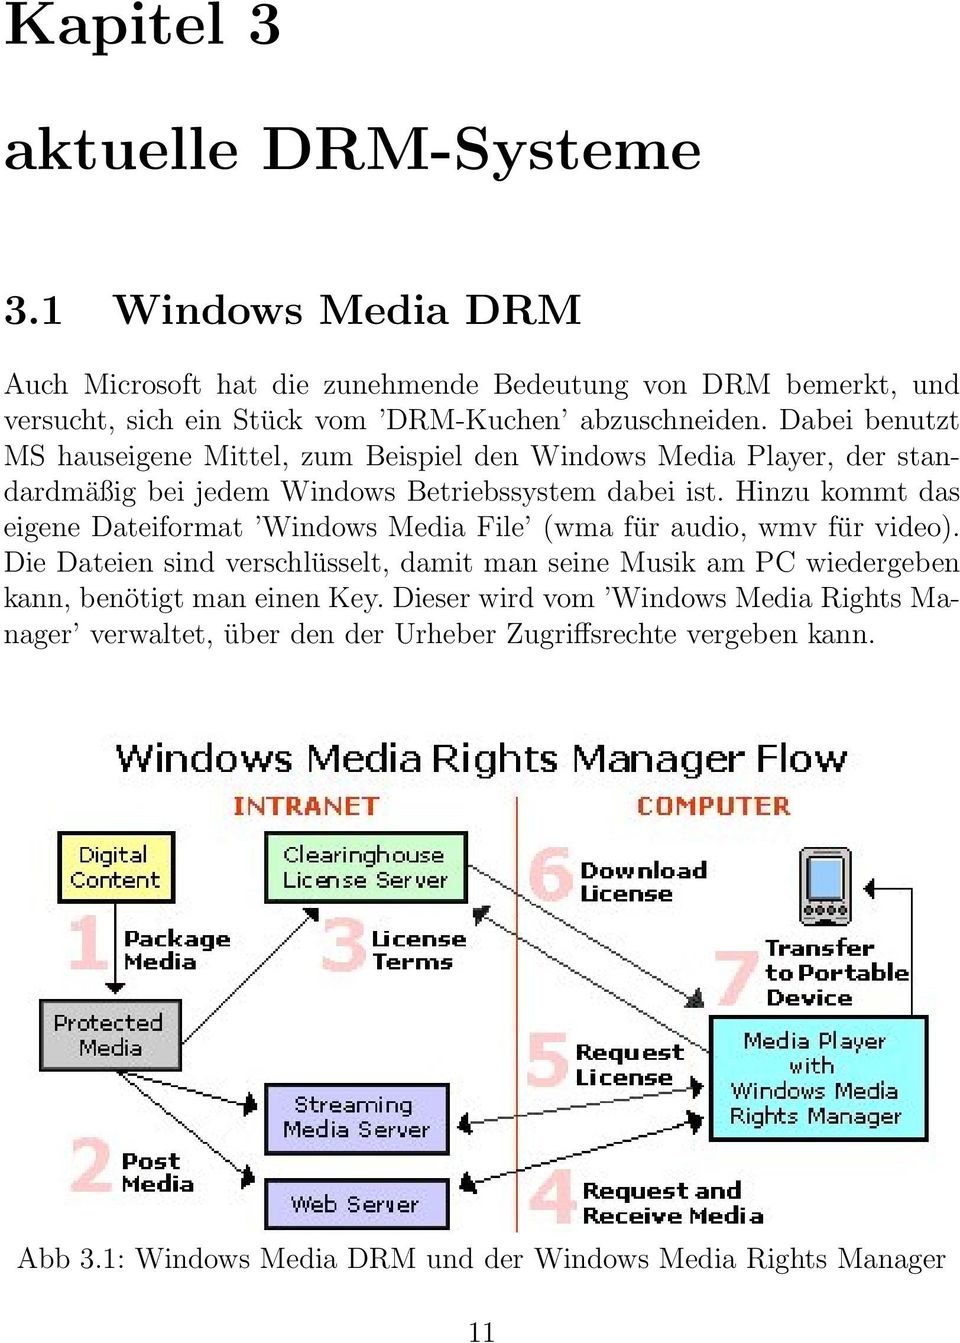 Dabei benutzt MS hauseigene Mittel, zum Beispiel den Windows Media Player, der standardmäßig bei jedem Windows Betriebssystem dabei ist.